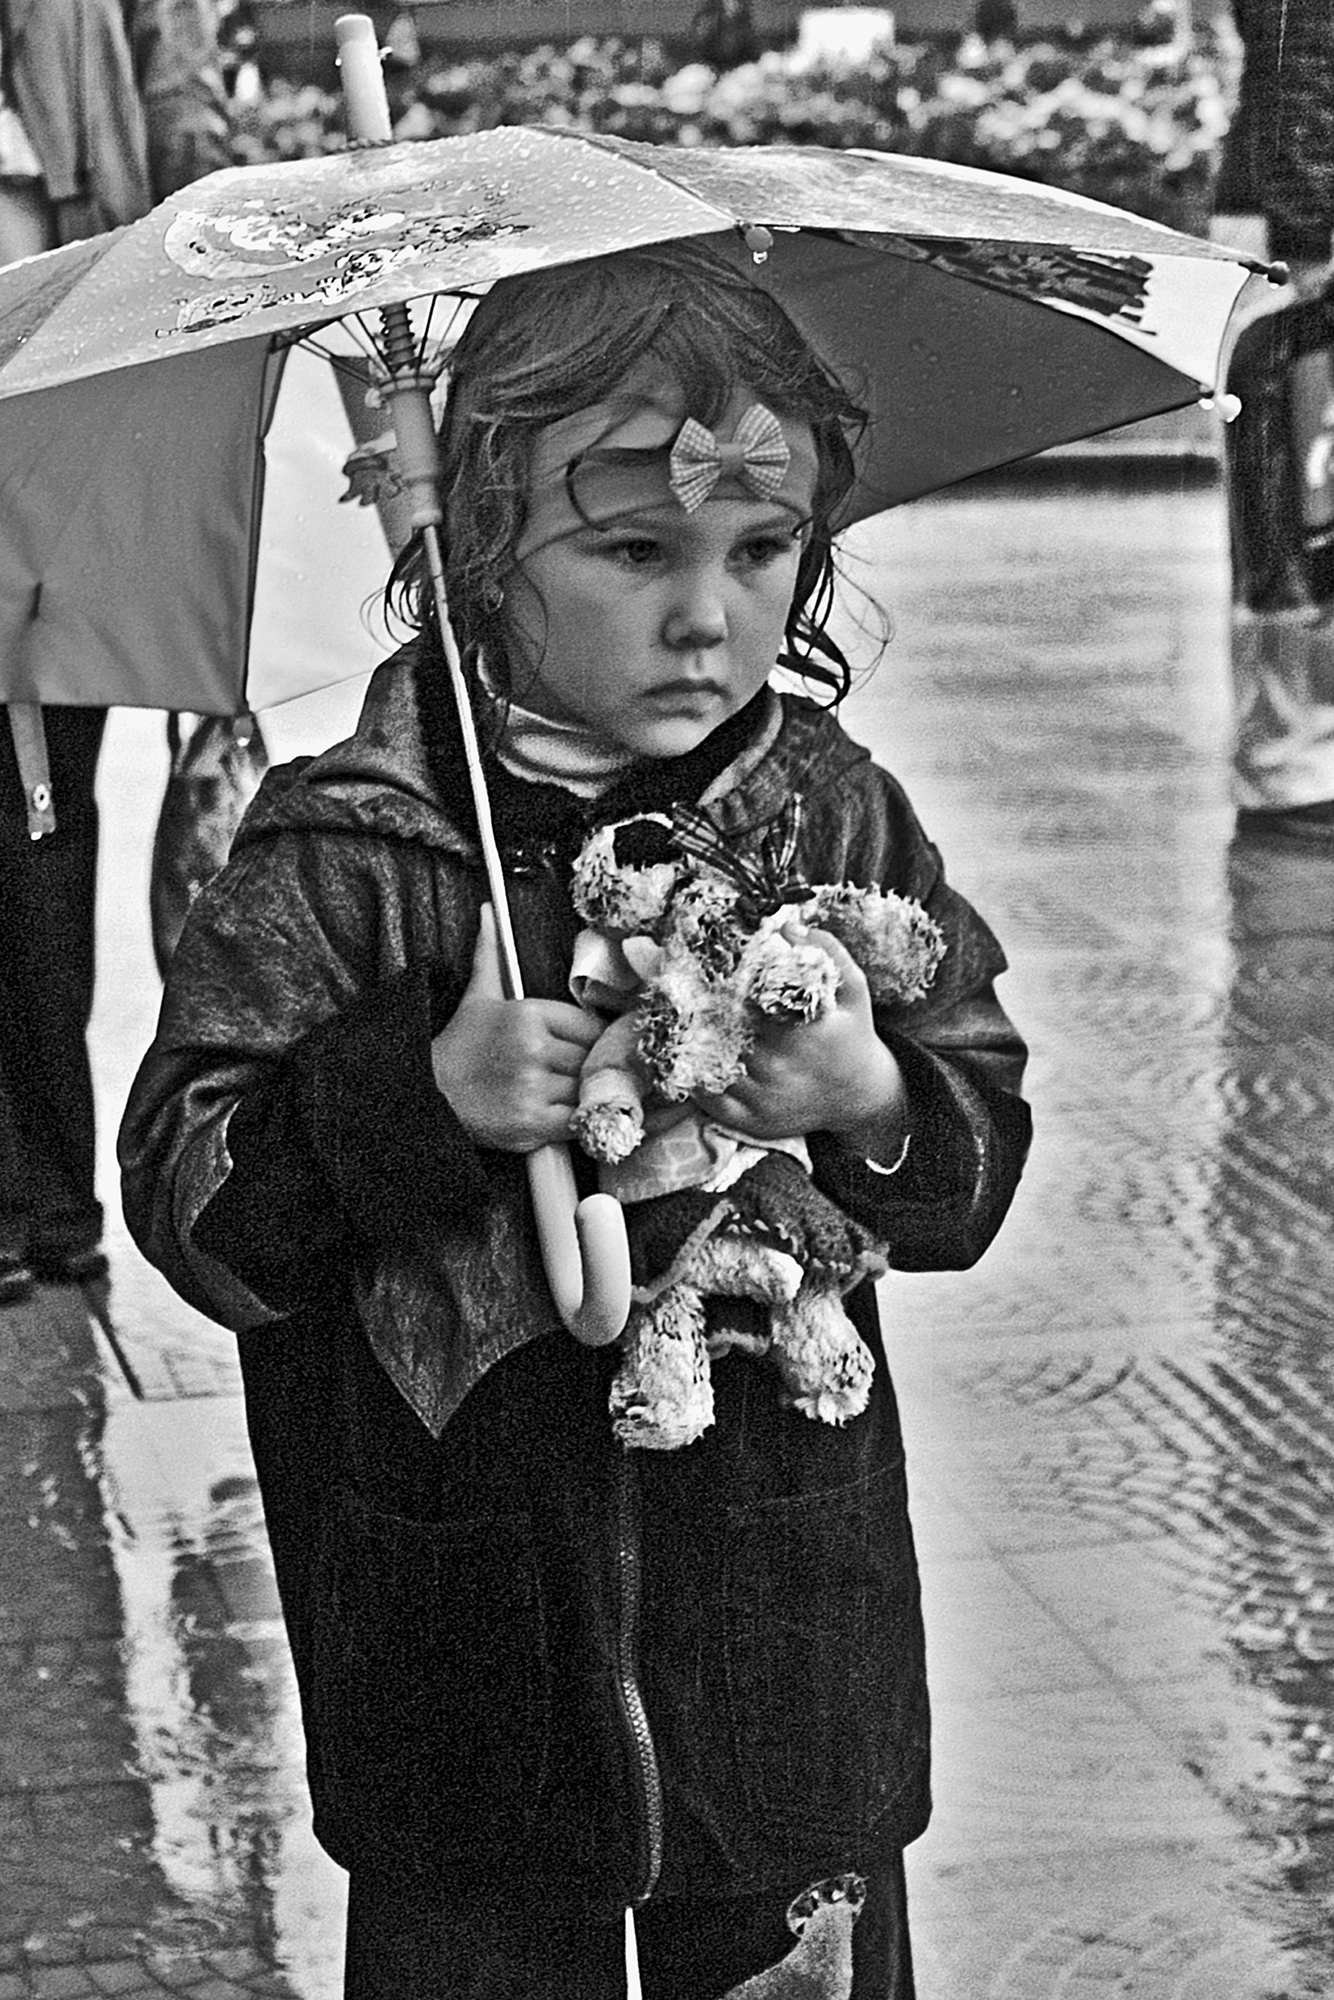 дети, дождь, зонтик, апатиты, чб, Николай Смоляк